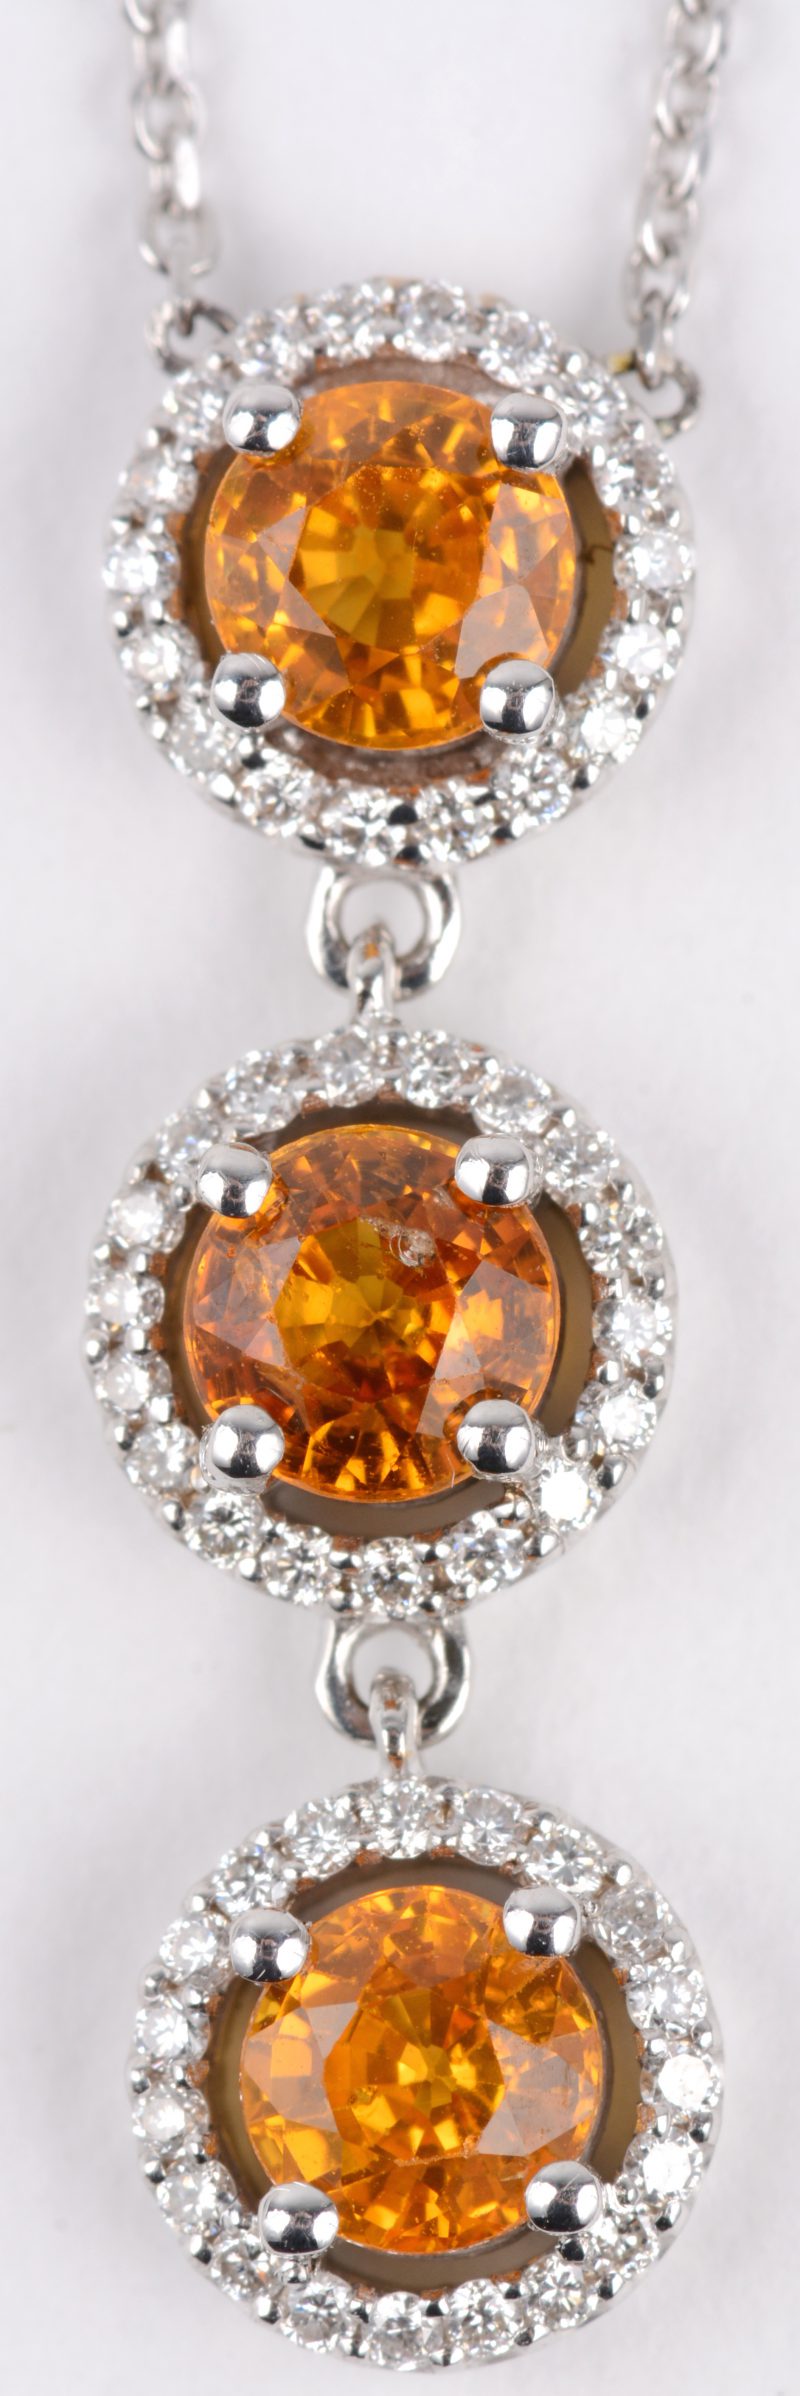 Een 18 karaats wit gouden ketting met hanger bezet met diamanten met een gezamenlijk gewicht van ± 0,50 ct. en drie gele saffieren met een gezamenlijk gewicht van ± 1,20 ct.